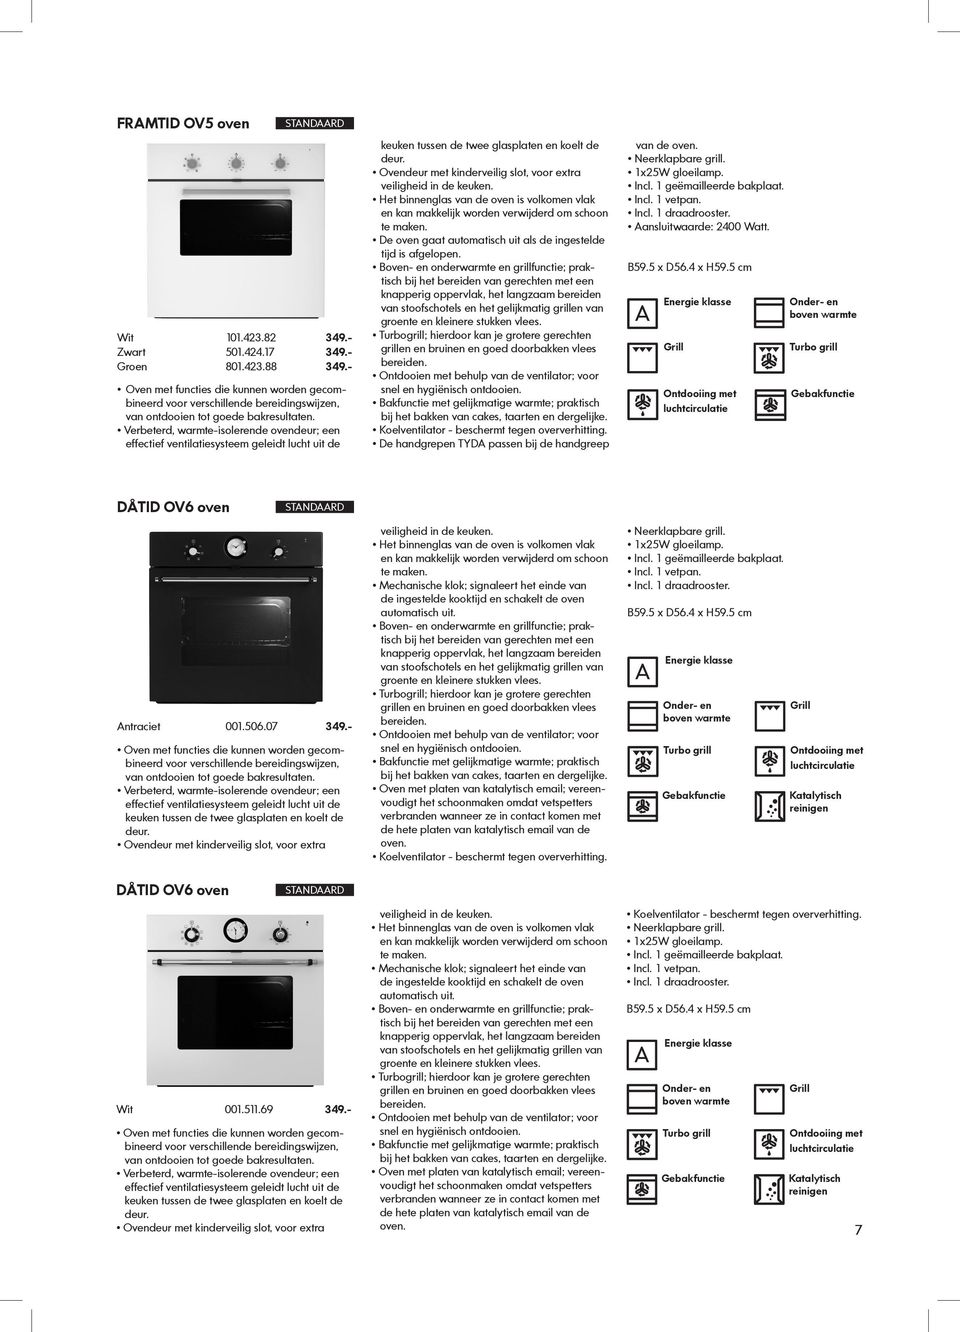 ikea apparatuur ontworpen voor elke dag pdf free download